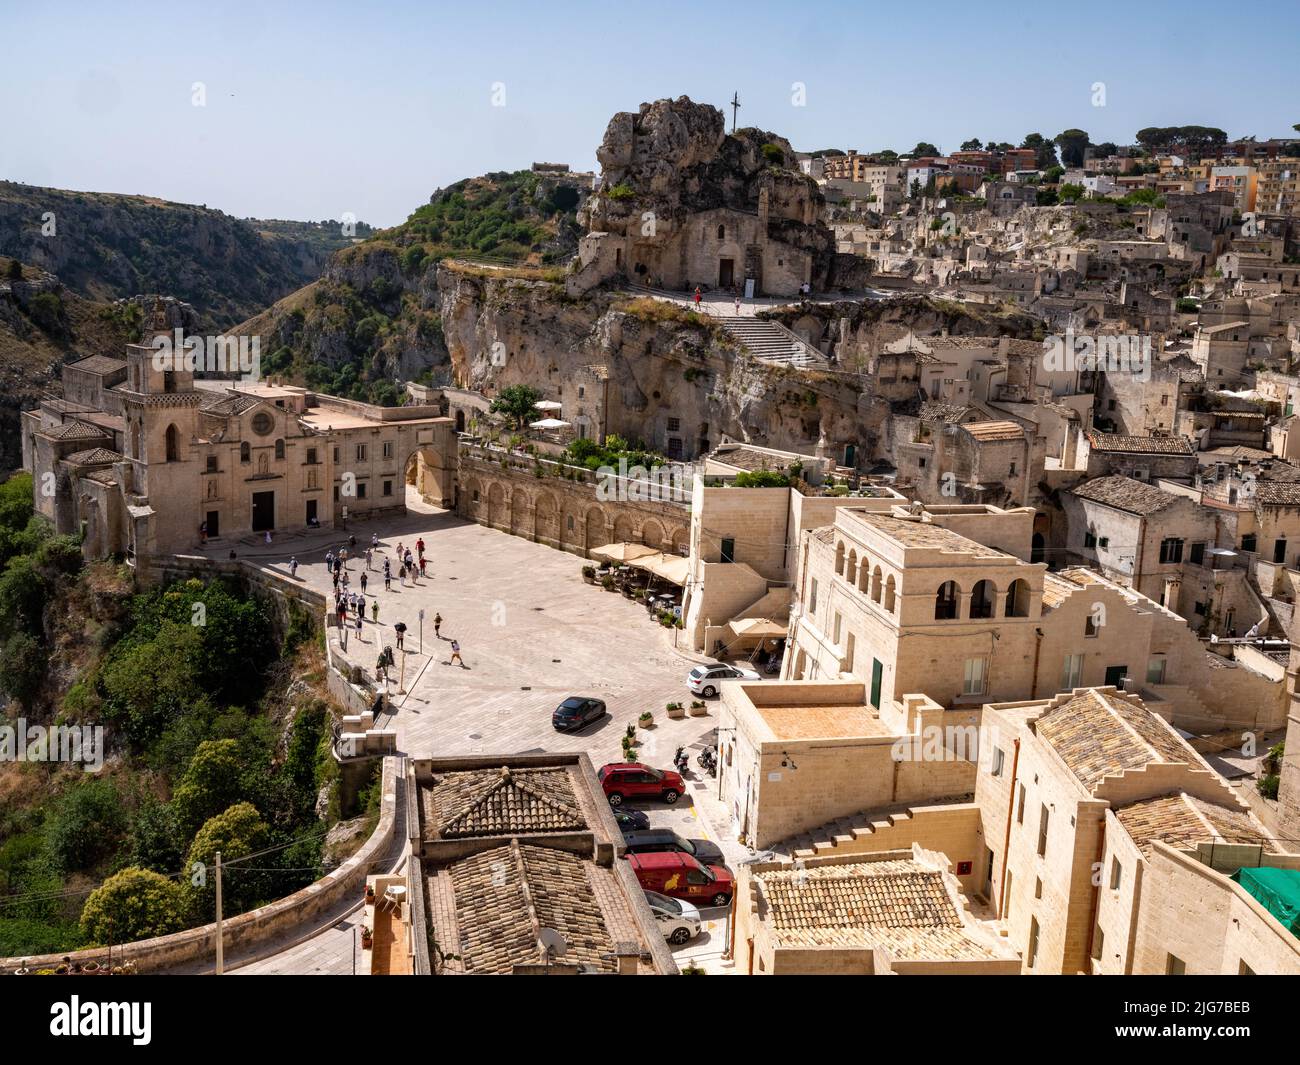 Vista panoramica dei Sassi di Matera, le antiche abitazioni rupestri e la città vecchia di Matera, Italia che risale al Paleolitico Foto Stock